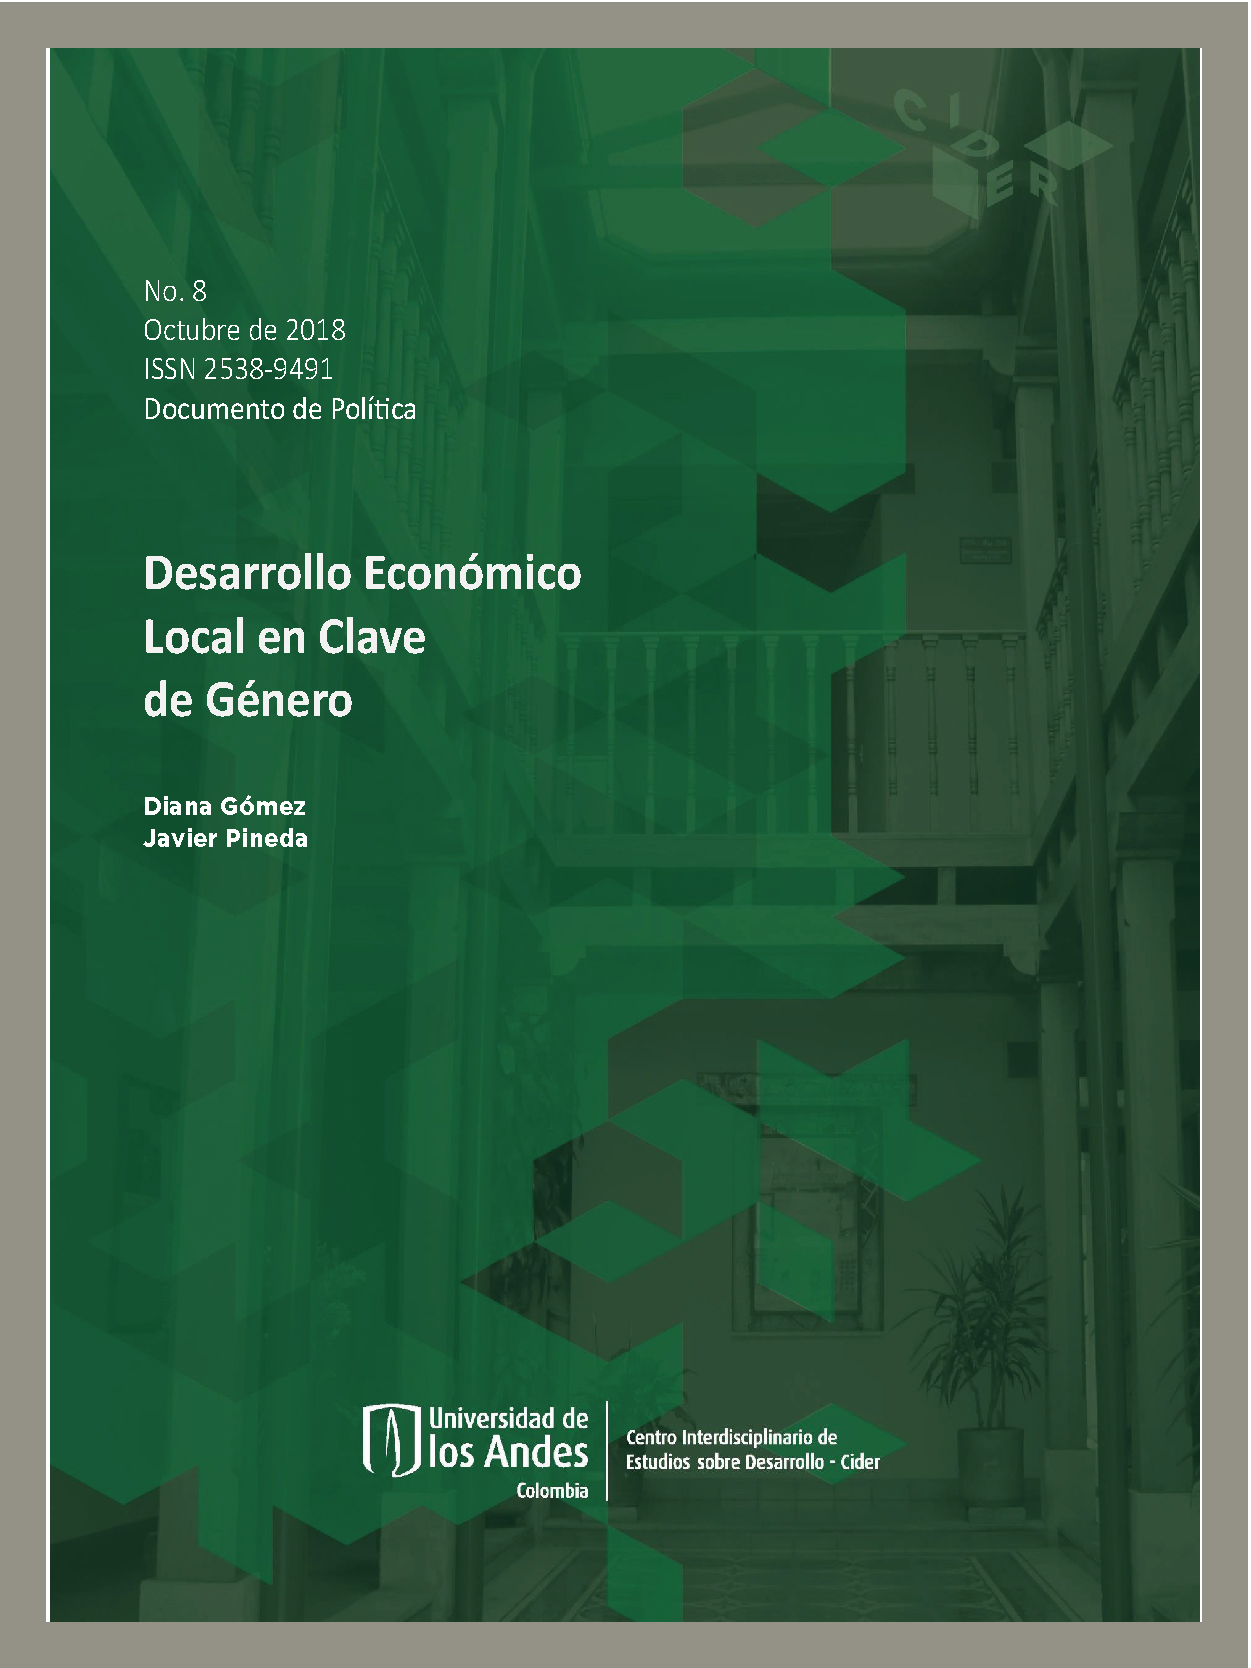 Documento de Política Desarrollo económico local en clave de género | Cider Uniandes